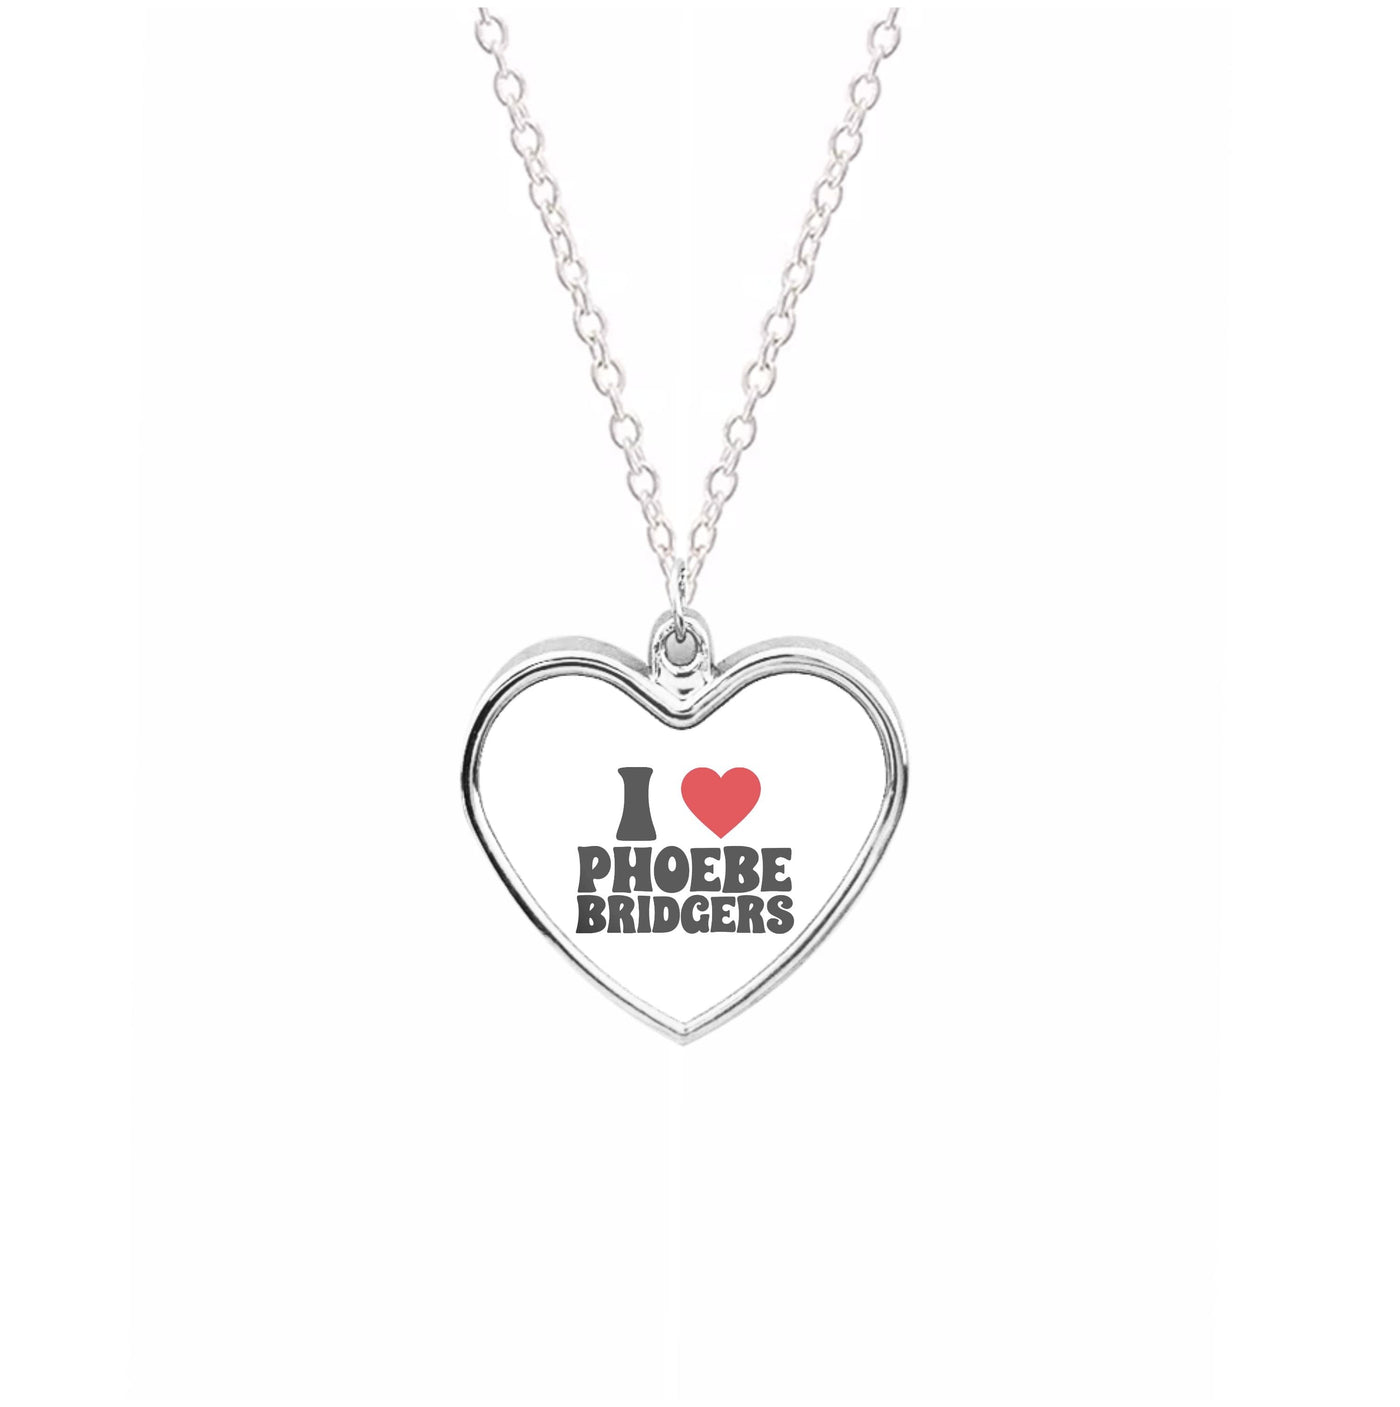 I Love Phoebe Bridgers Necklace